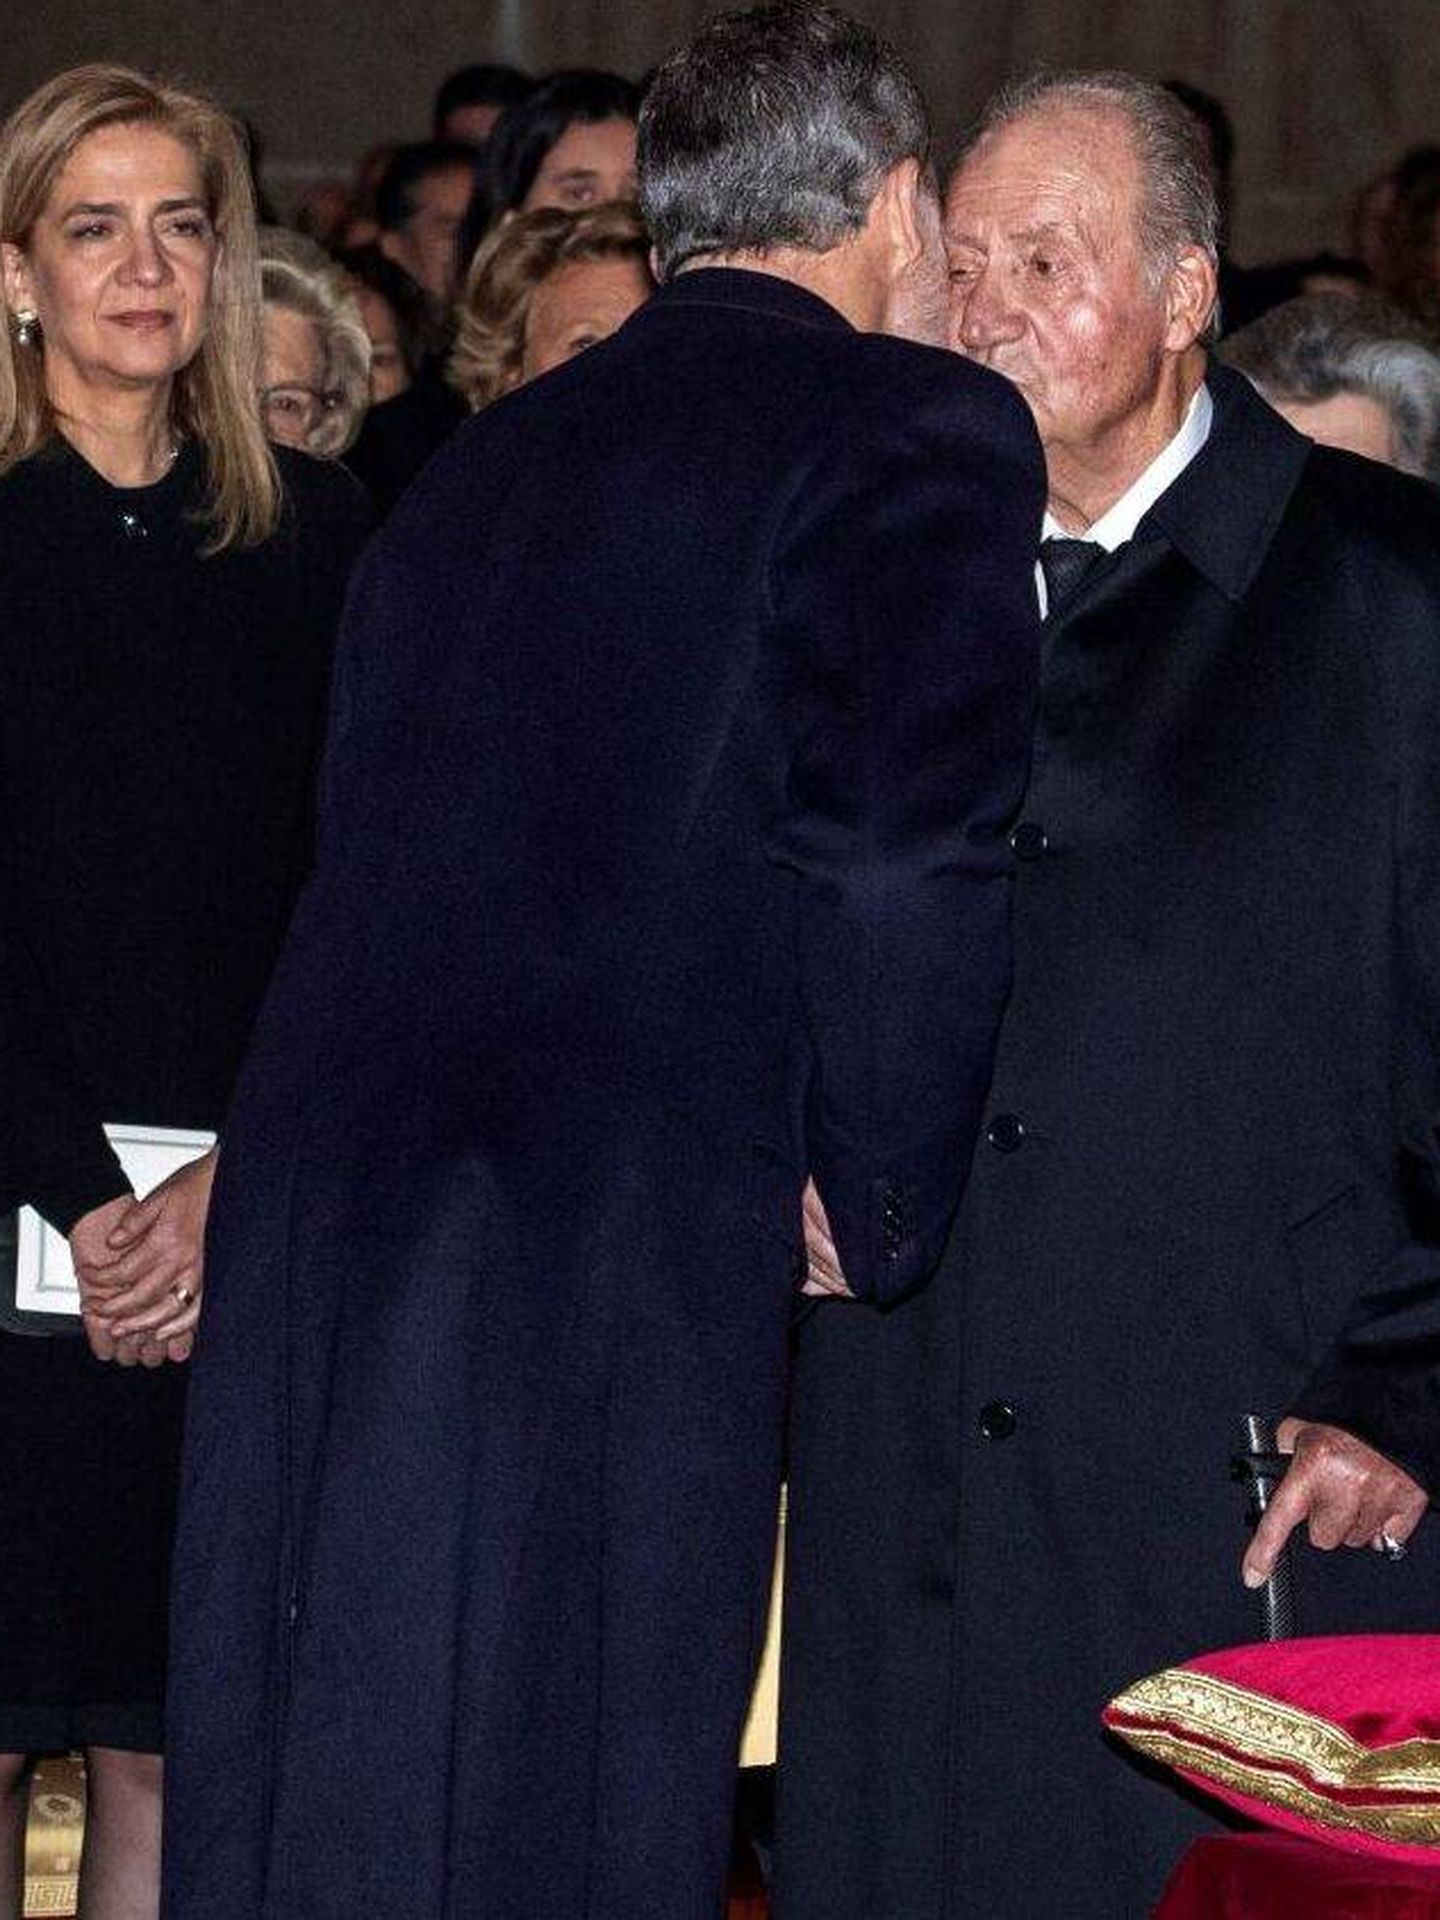 La infanta Cristina presencia un beso del rey Felipe al rey Juan Carlos en el funeral de la infanta Pilar. (EFE)